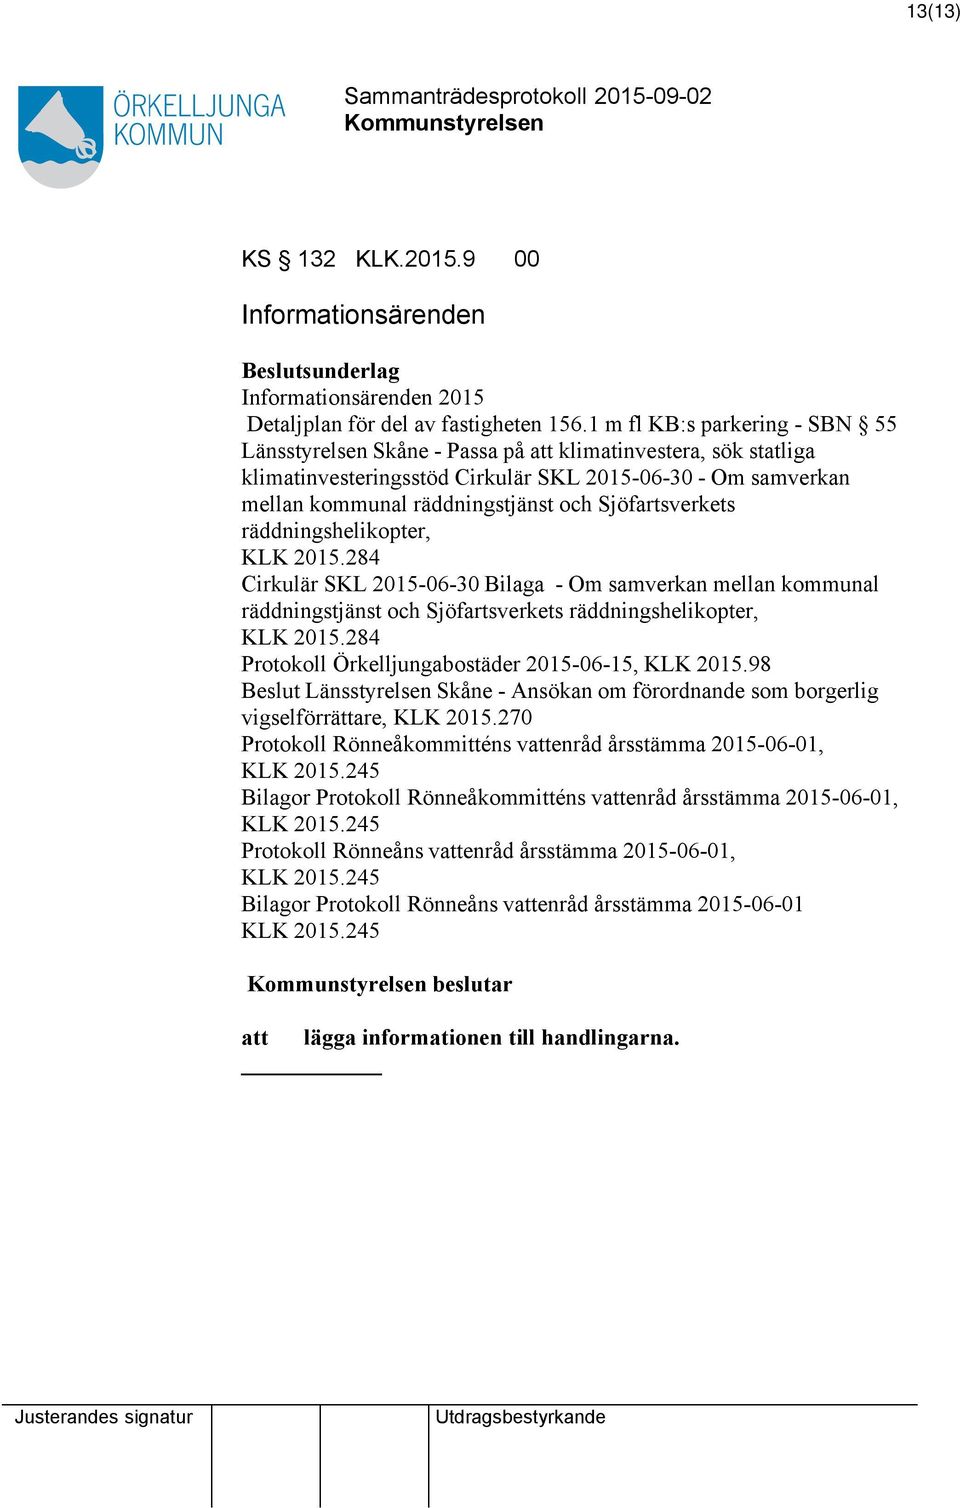 Sjöfartsverkets räddningshelikopter, KLK 2015.284 Cirkulär SKL 2015-06-30 Bilaga - Om samverkan mellan kommunal räddningstjänst och Sjöfartsverkets räddningshelikopter, KLK 2015.